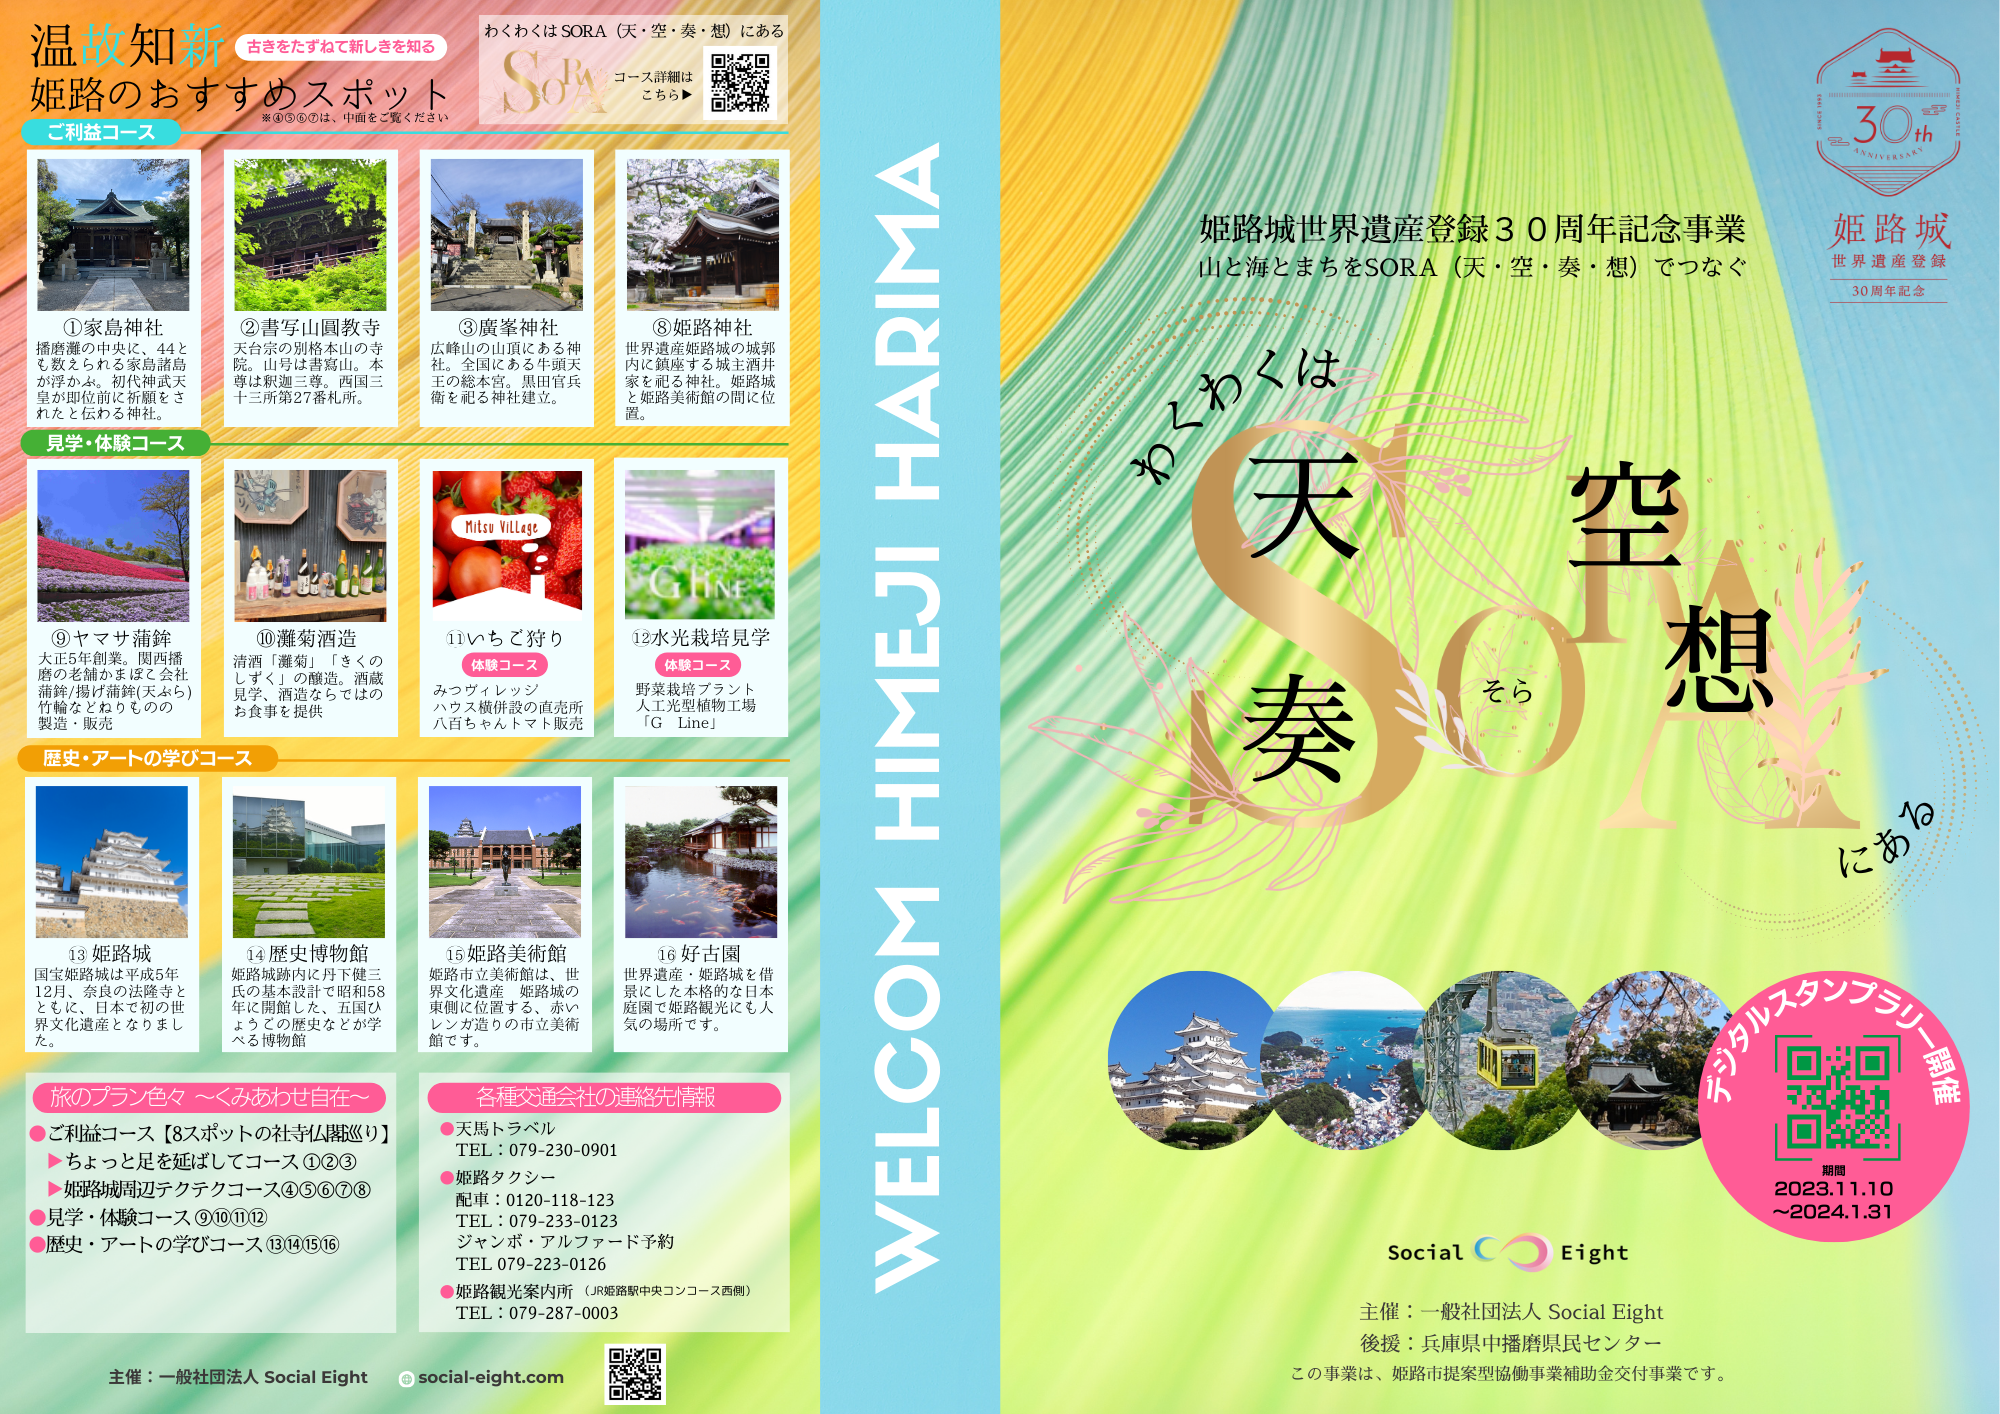 姫路城世界遺産登録30周年記念事業「わくわくは、SORA（天・空・奏・想）にある」